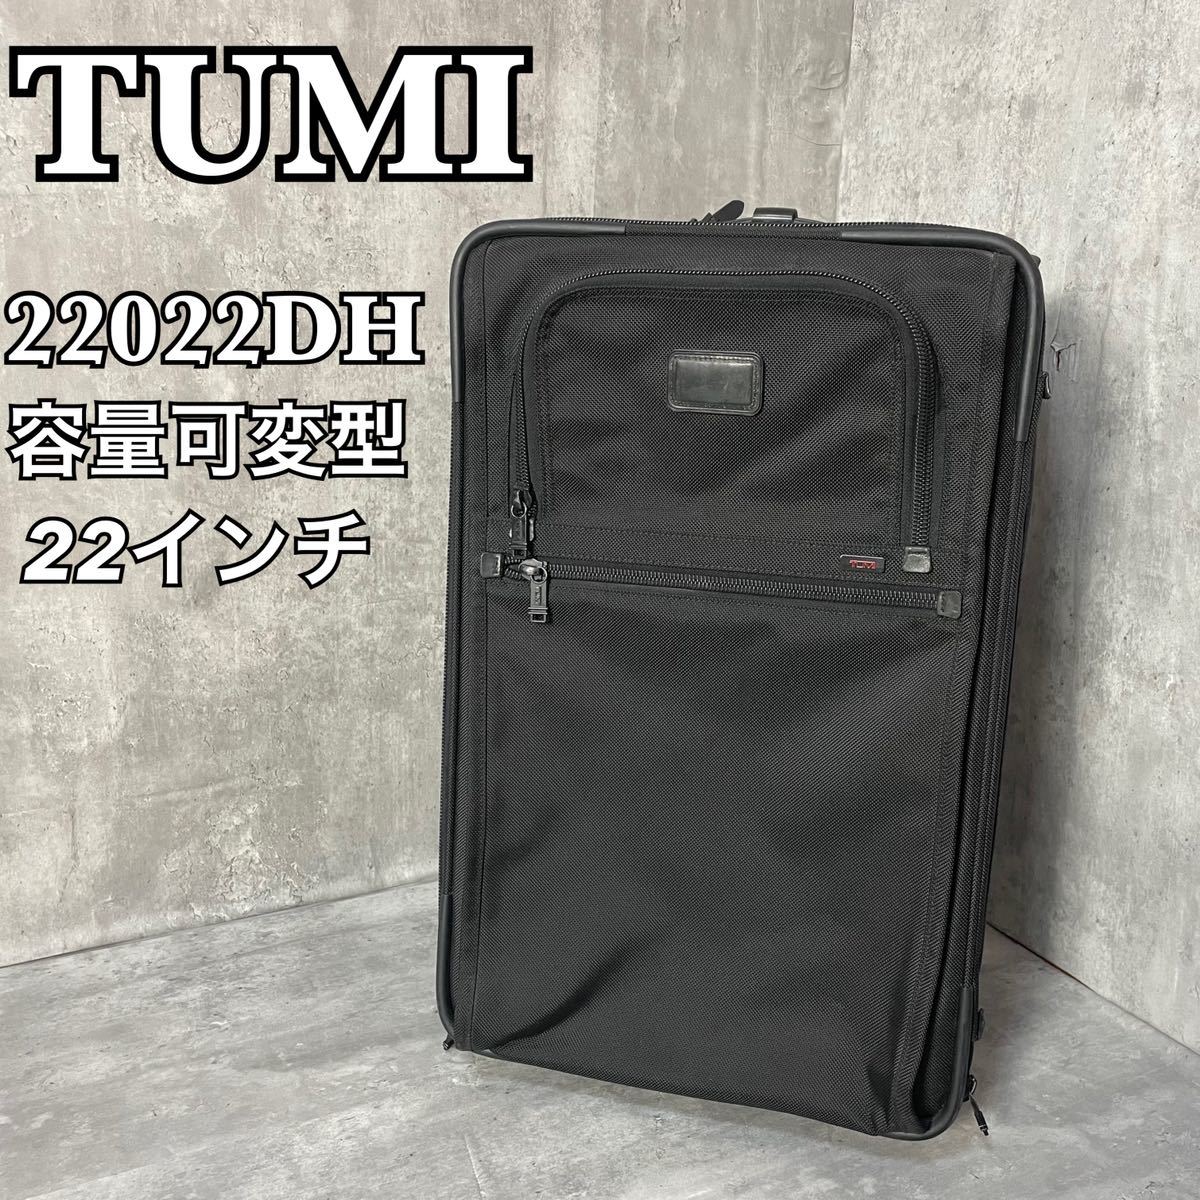 TUMI Tumi 22022DH емкость заменяемый type Carry кейс портфель чемодан дорожная сумка путешествие чёрный 